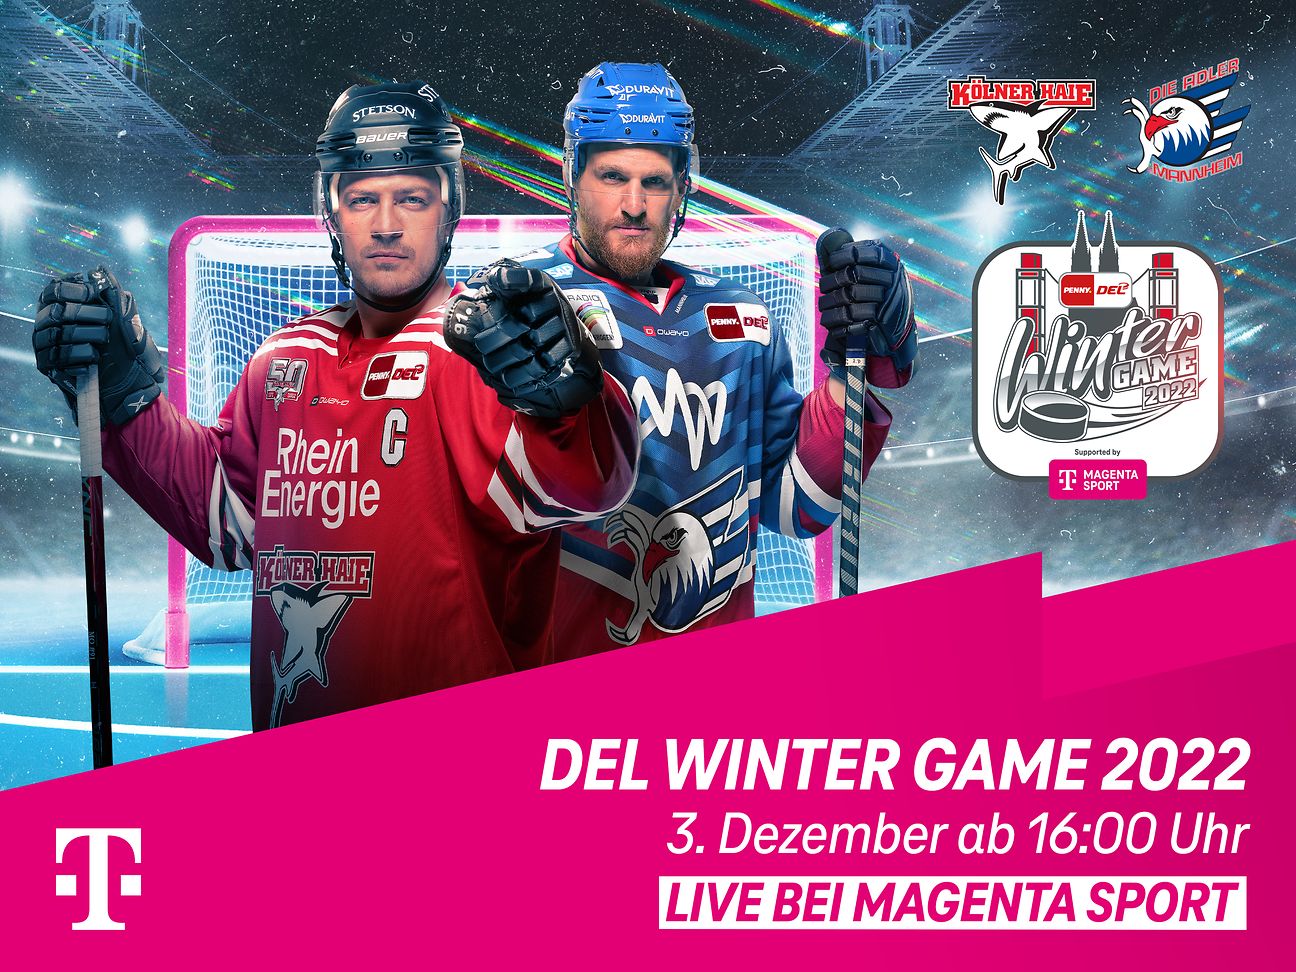 DEL Wintergame live bei MagentaSport Deutsche Telekom